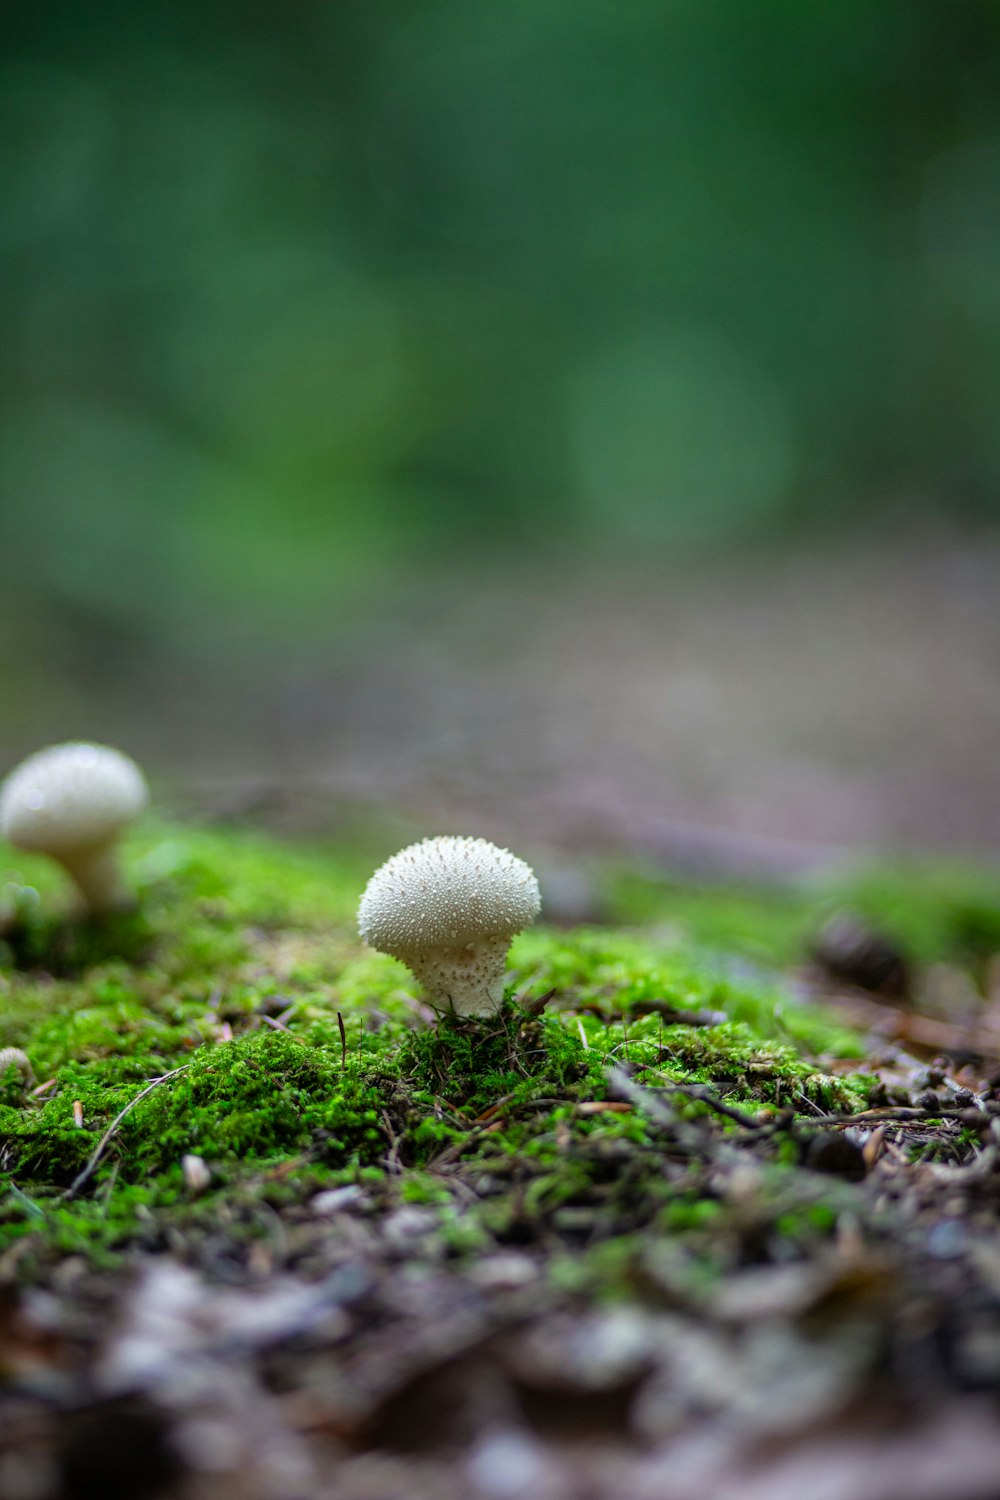 이끼로 덮인 땅 위에 앉아 있는 버섯 무리